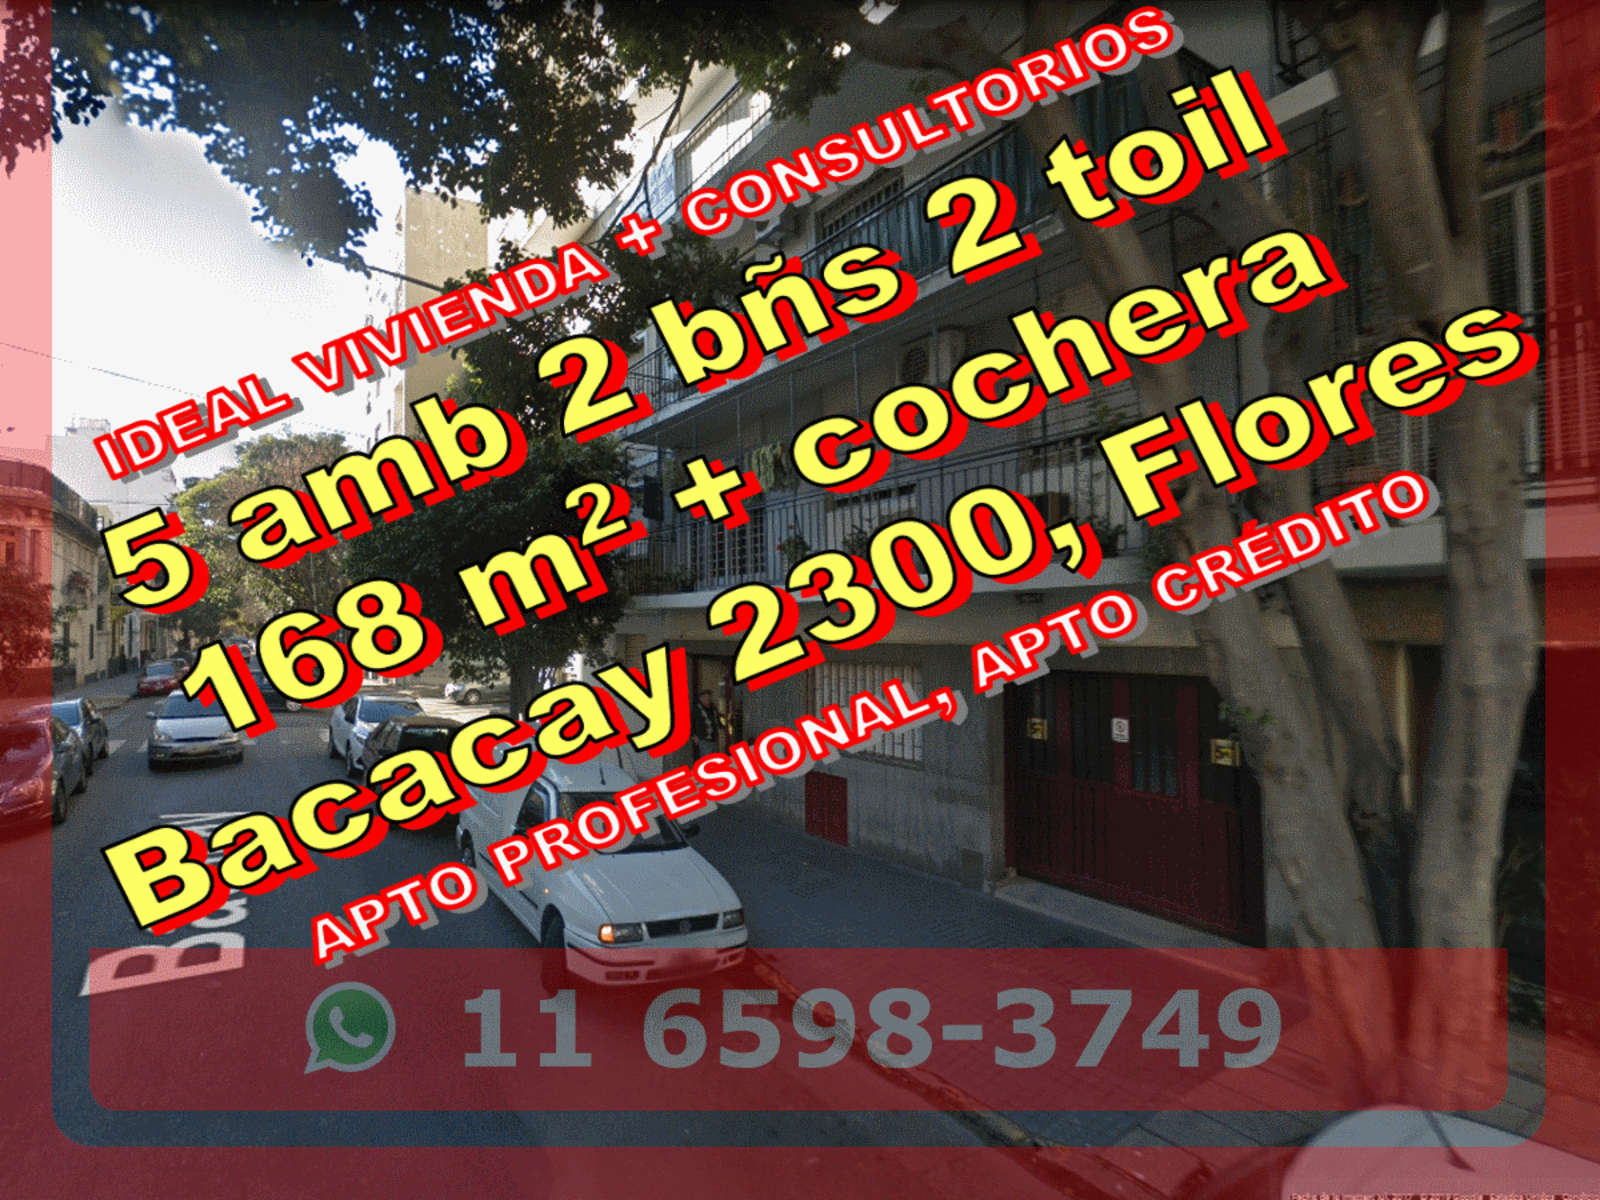 Departamento en Venta en Flores 5 ambientes 2 ba�os 2 toilettes 168 m2 + cochera � Bacacay 230